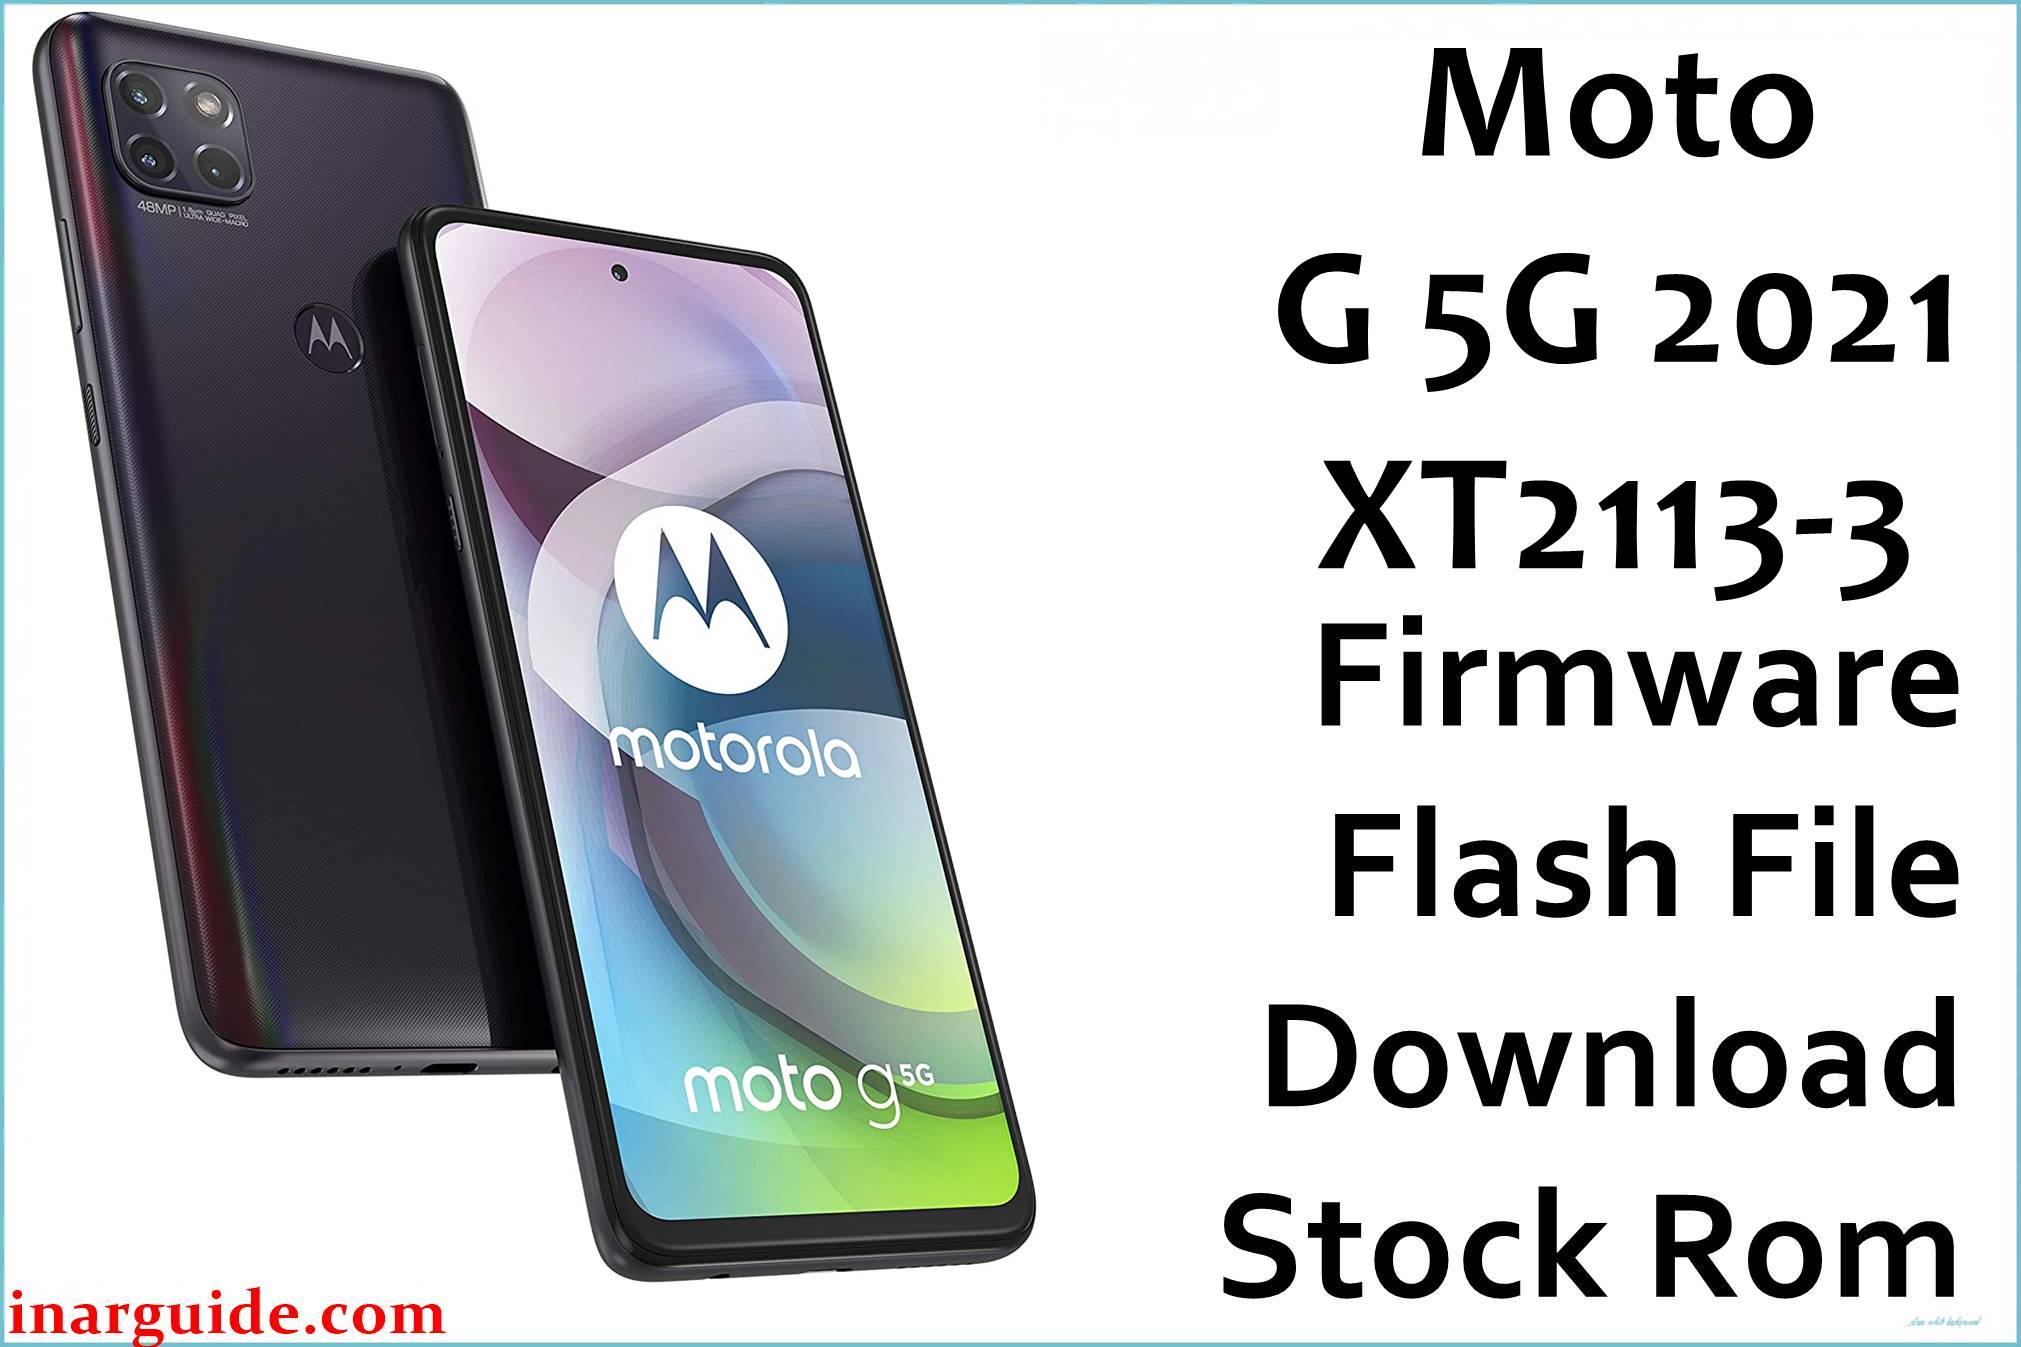 Motorola Moto G 5G 2021 XT2113-3